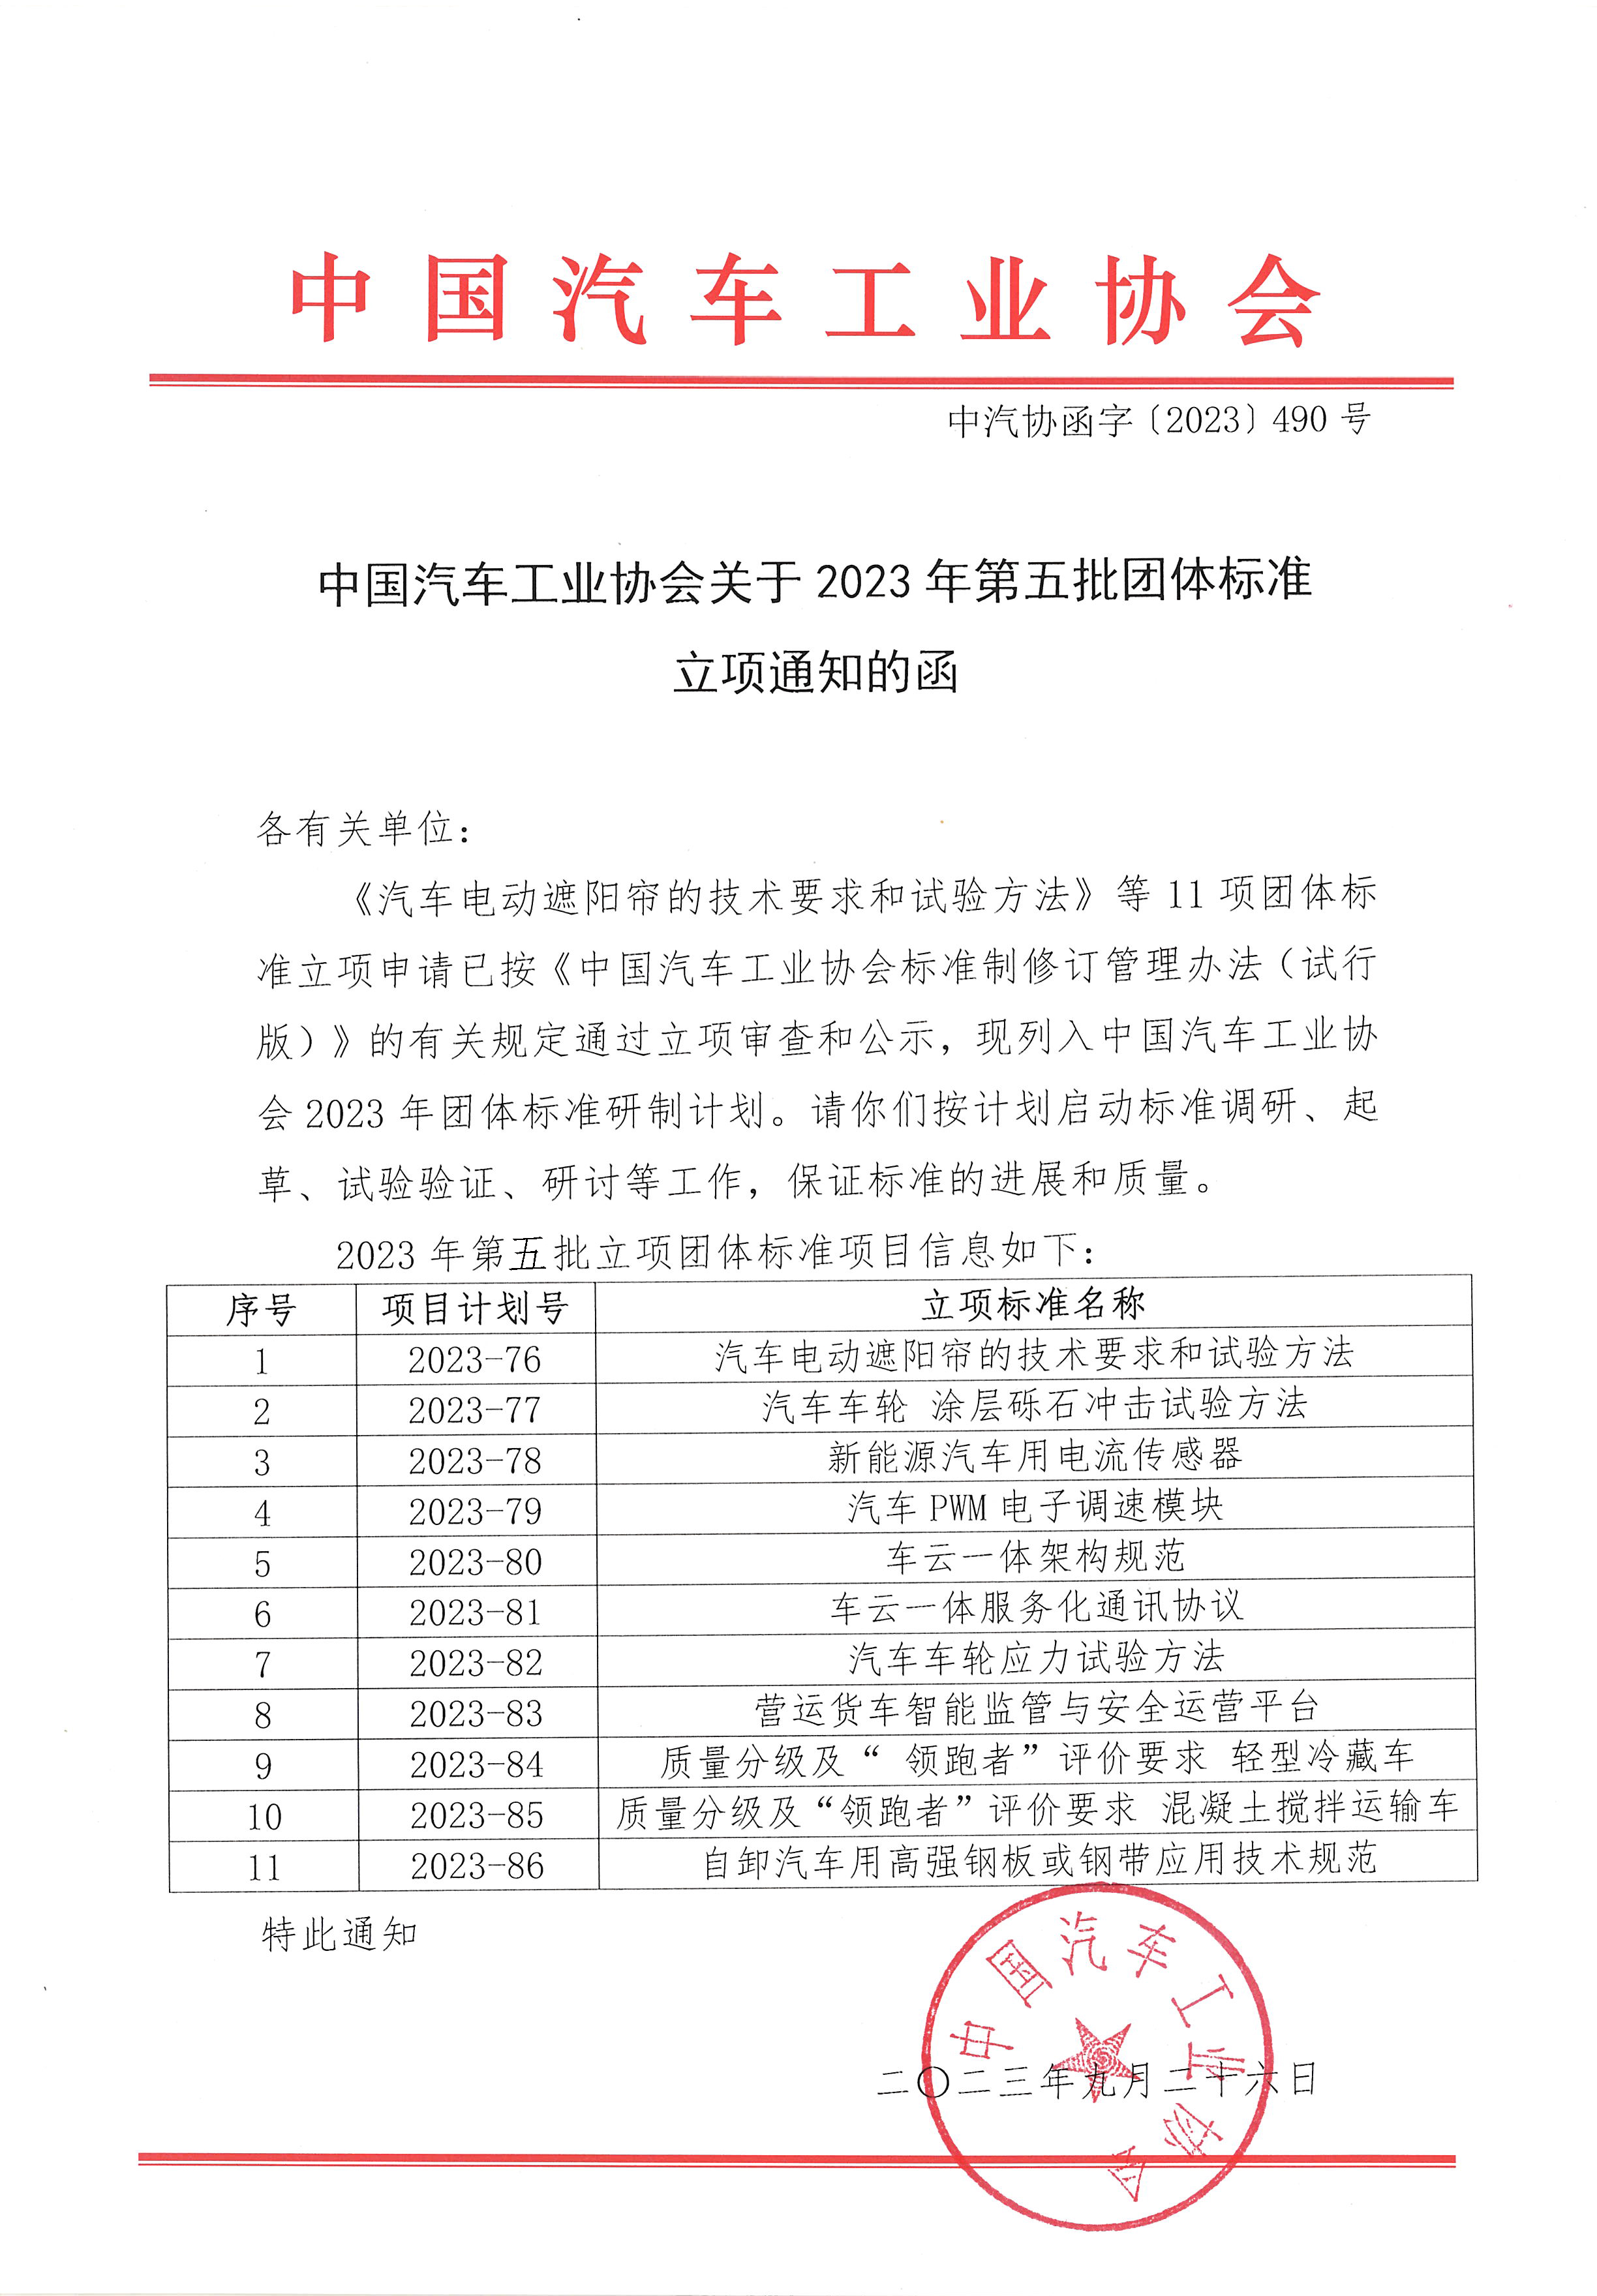 中汽协函字〔2023〕490号--中国汽车工业协会关于2023年第五批团体标准立项通知的函.png